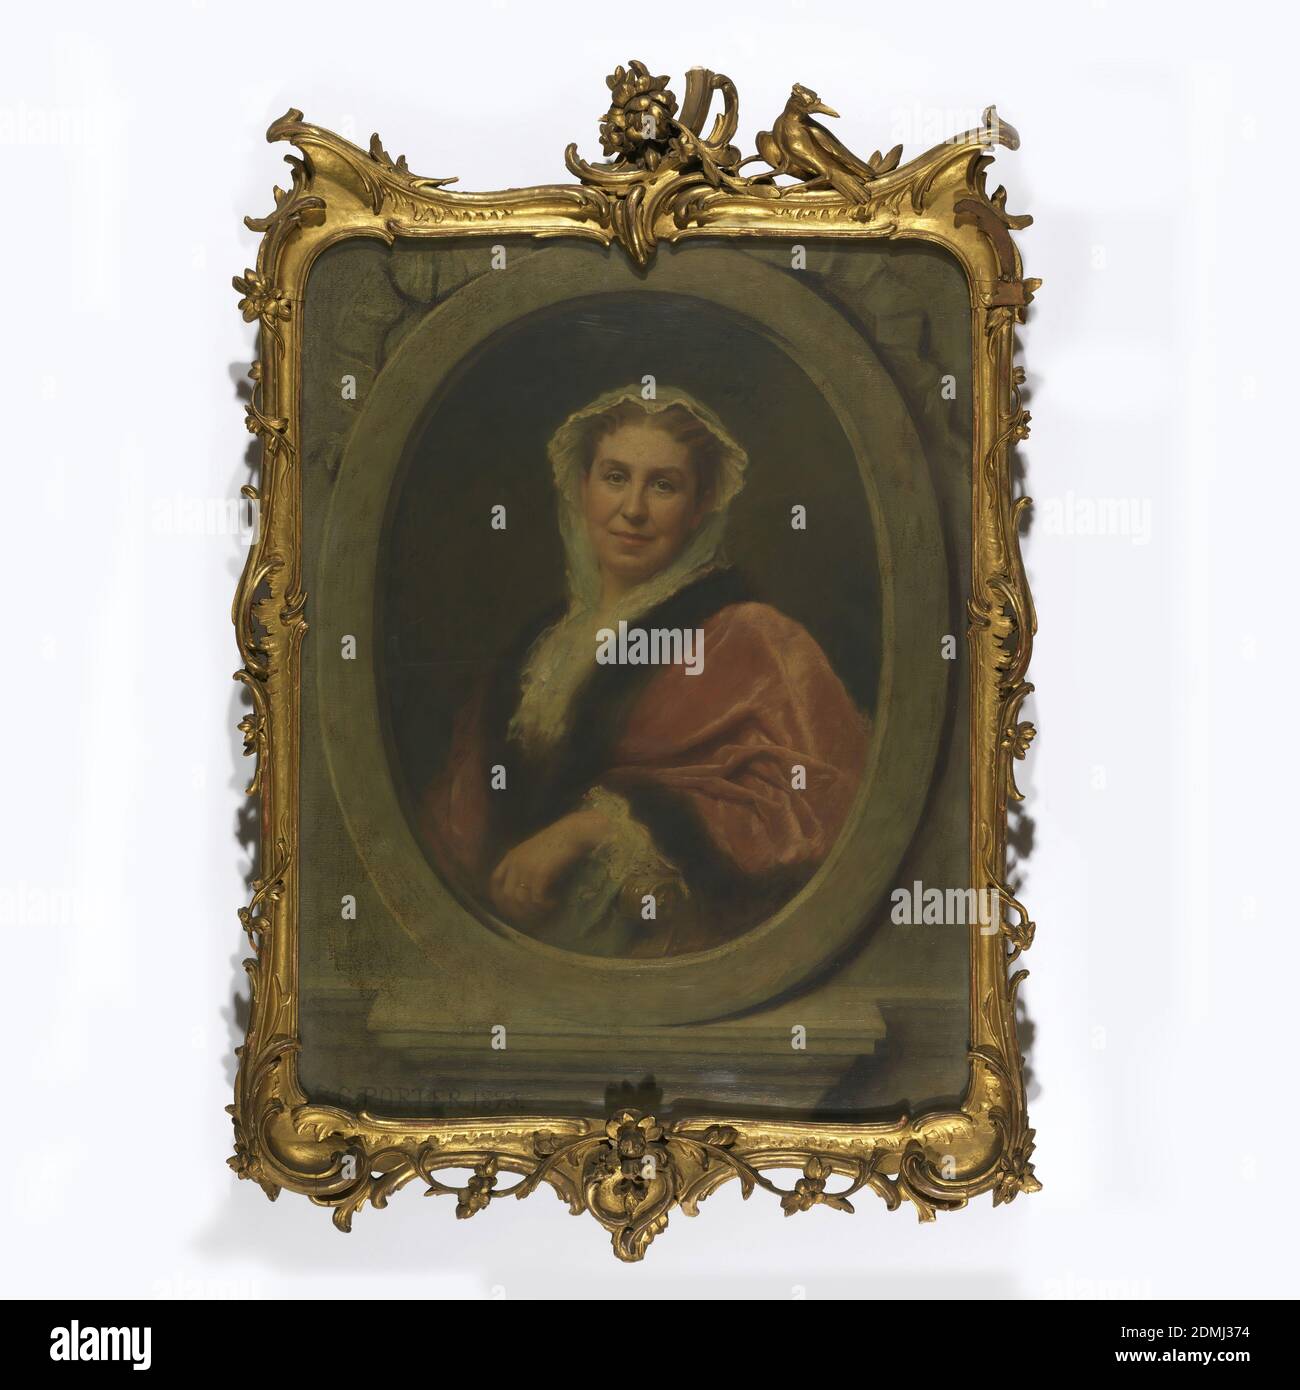 Portrait de Sarah Amelia Cooper, huile sur toile, buste de portrait d’une femme dans un capot blanc, portant une robe rose doublée de fourrure avec des volants blancs, dans un cadre ovale en trompe l’œil., Boston, Massachusetts, Etats-Unis, 1893, portraits, peinture, peinture Banque D'Images